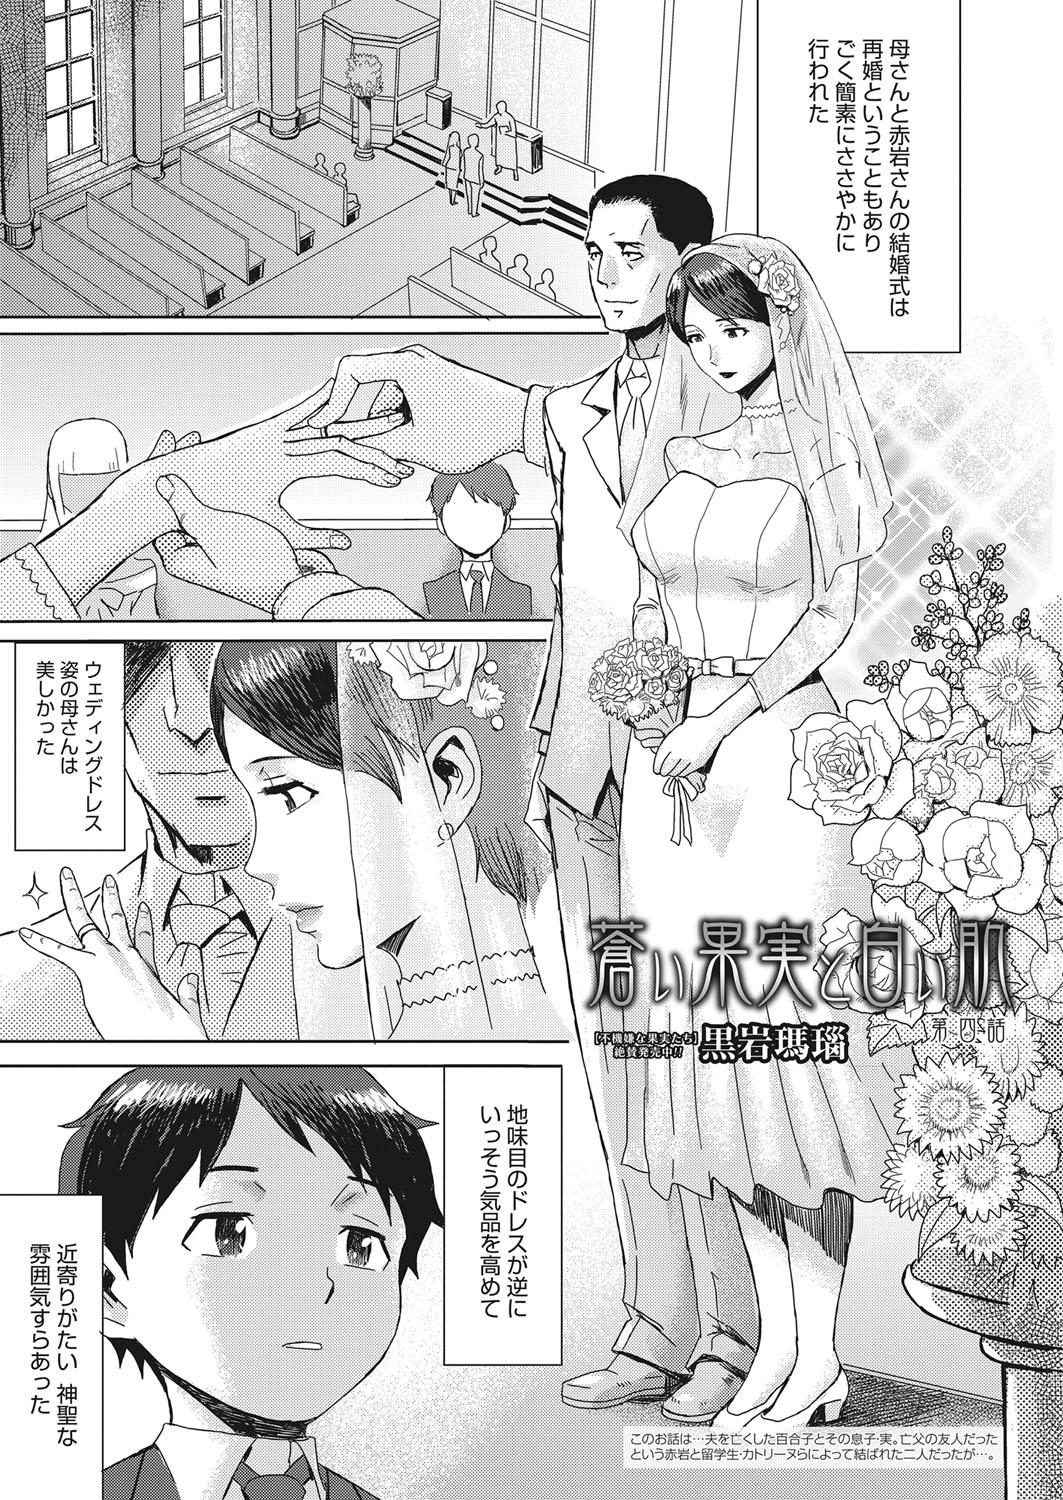 Stepmom Web Manga Bangaichi Vol. 15 Interracial - Page 4